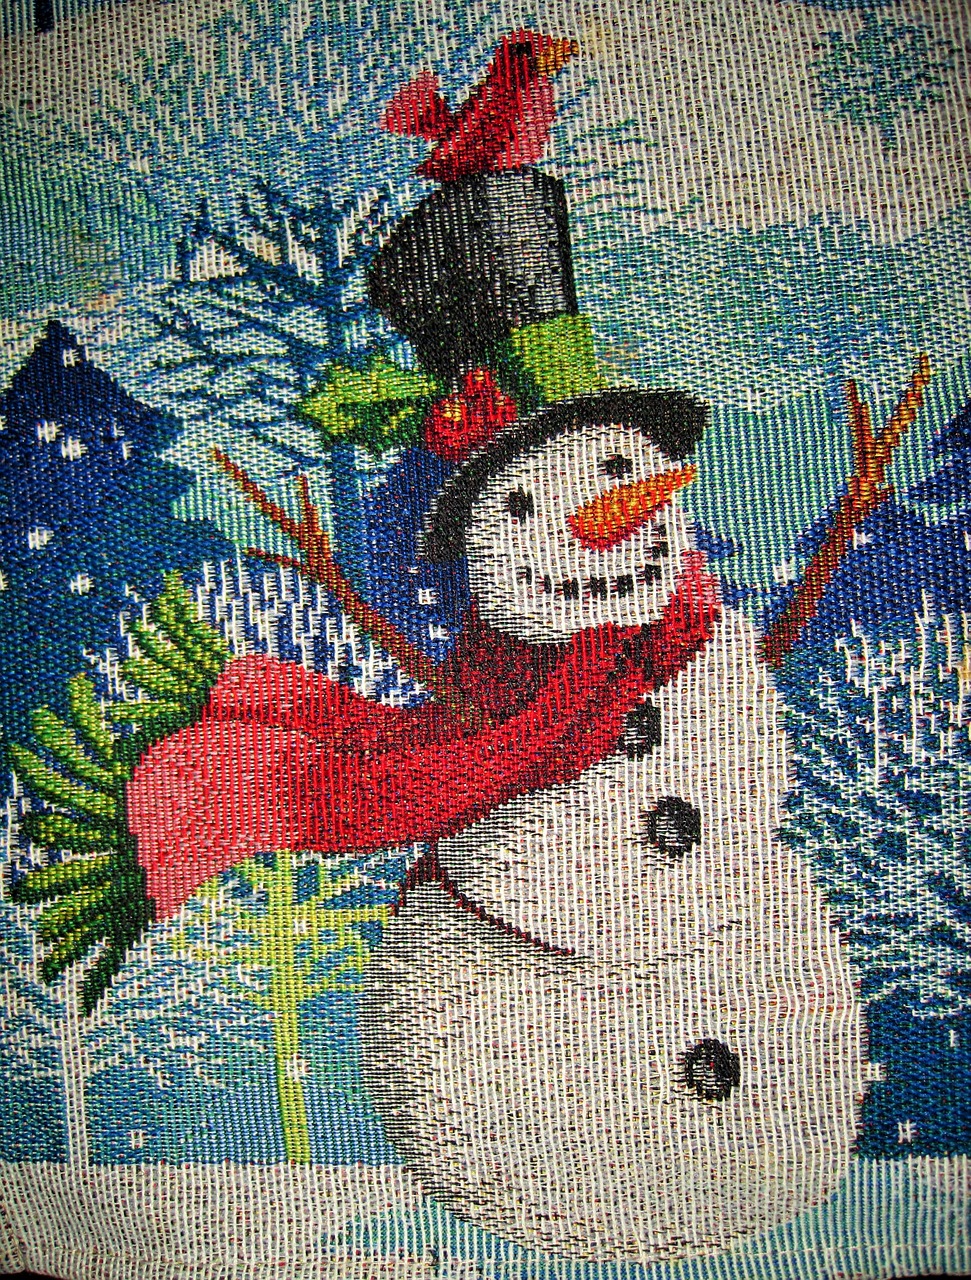 snow man image scarf free photo